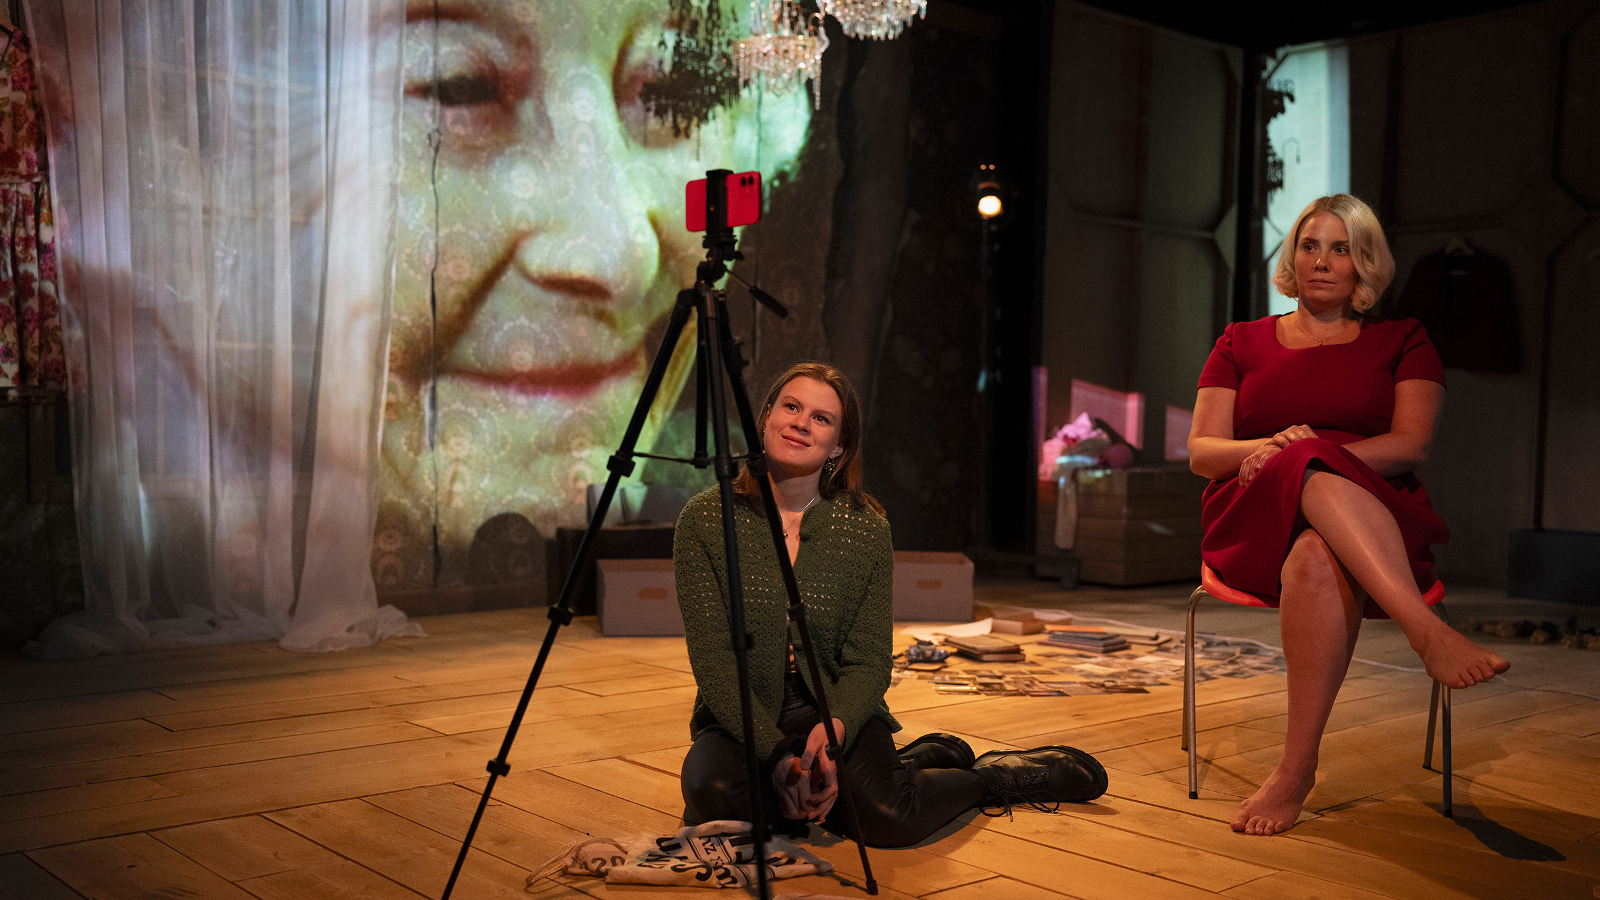 Kuvassa ovat Inke Koskinen lattialla ja Emmi Kaislakari istumassa tuolissa. Edessä on kamera ja taustalla on heijastettuna Seela Sellan kasvot.